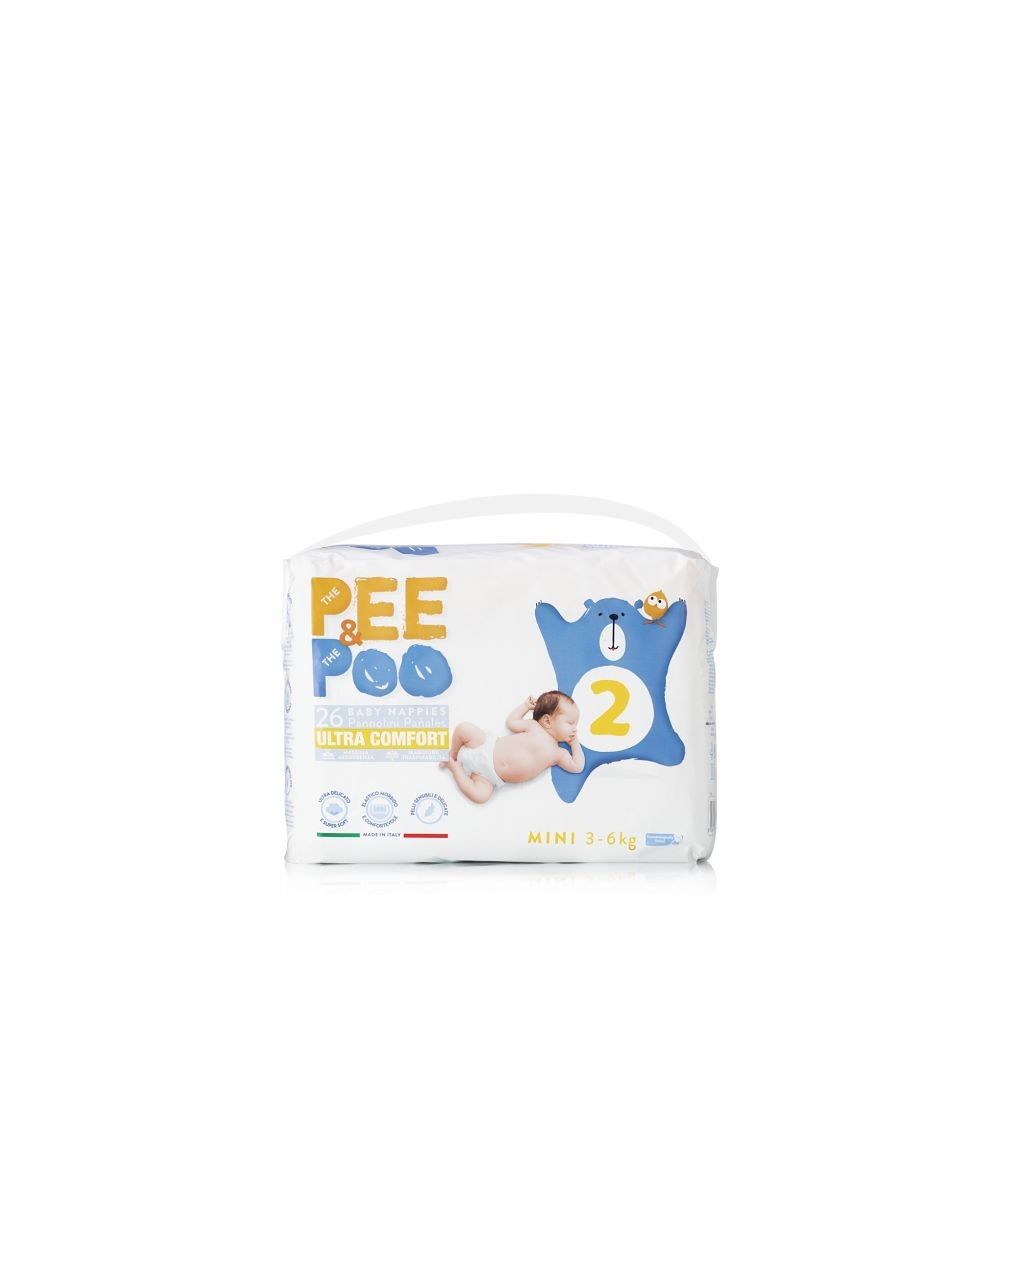 Pee&poo - mini tg 2 26 pz - The Pee &amp; The Poo